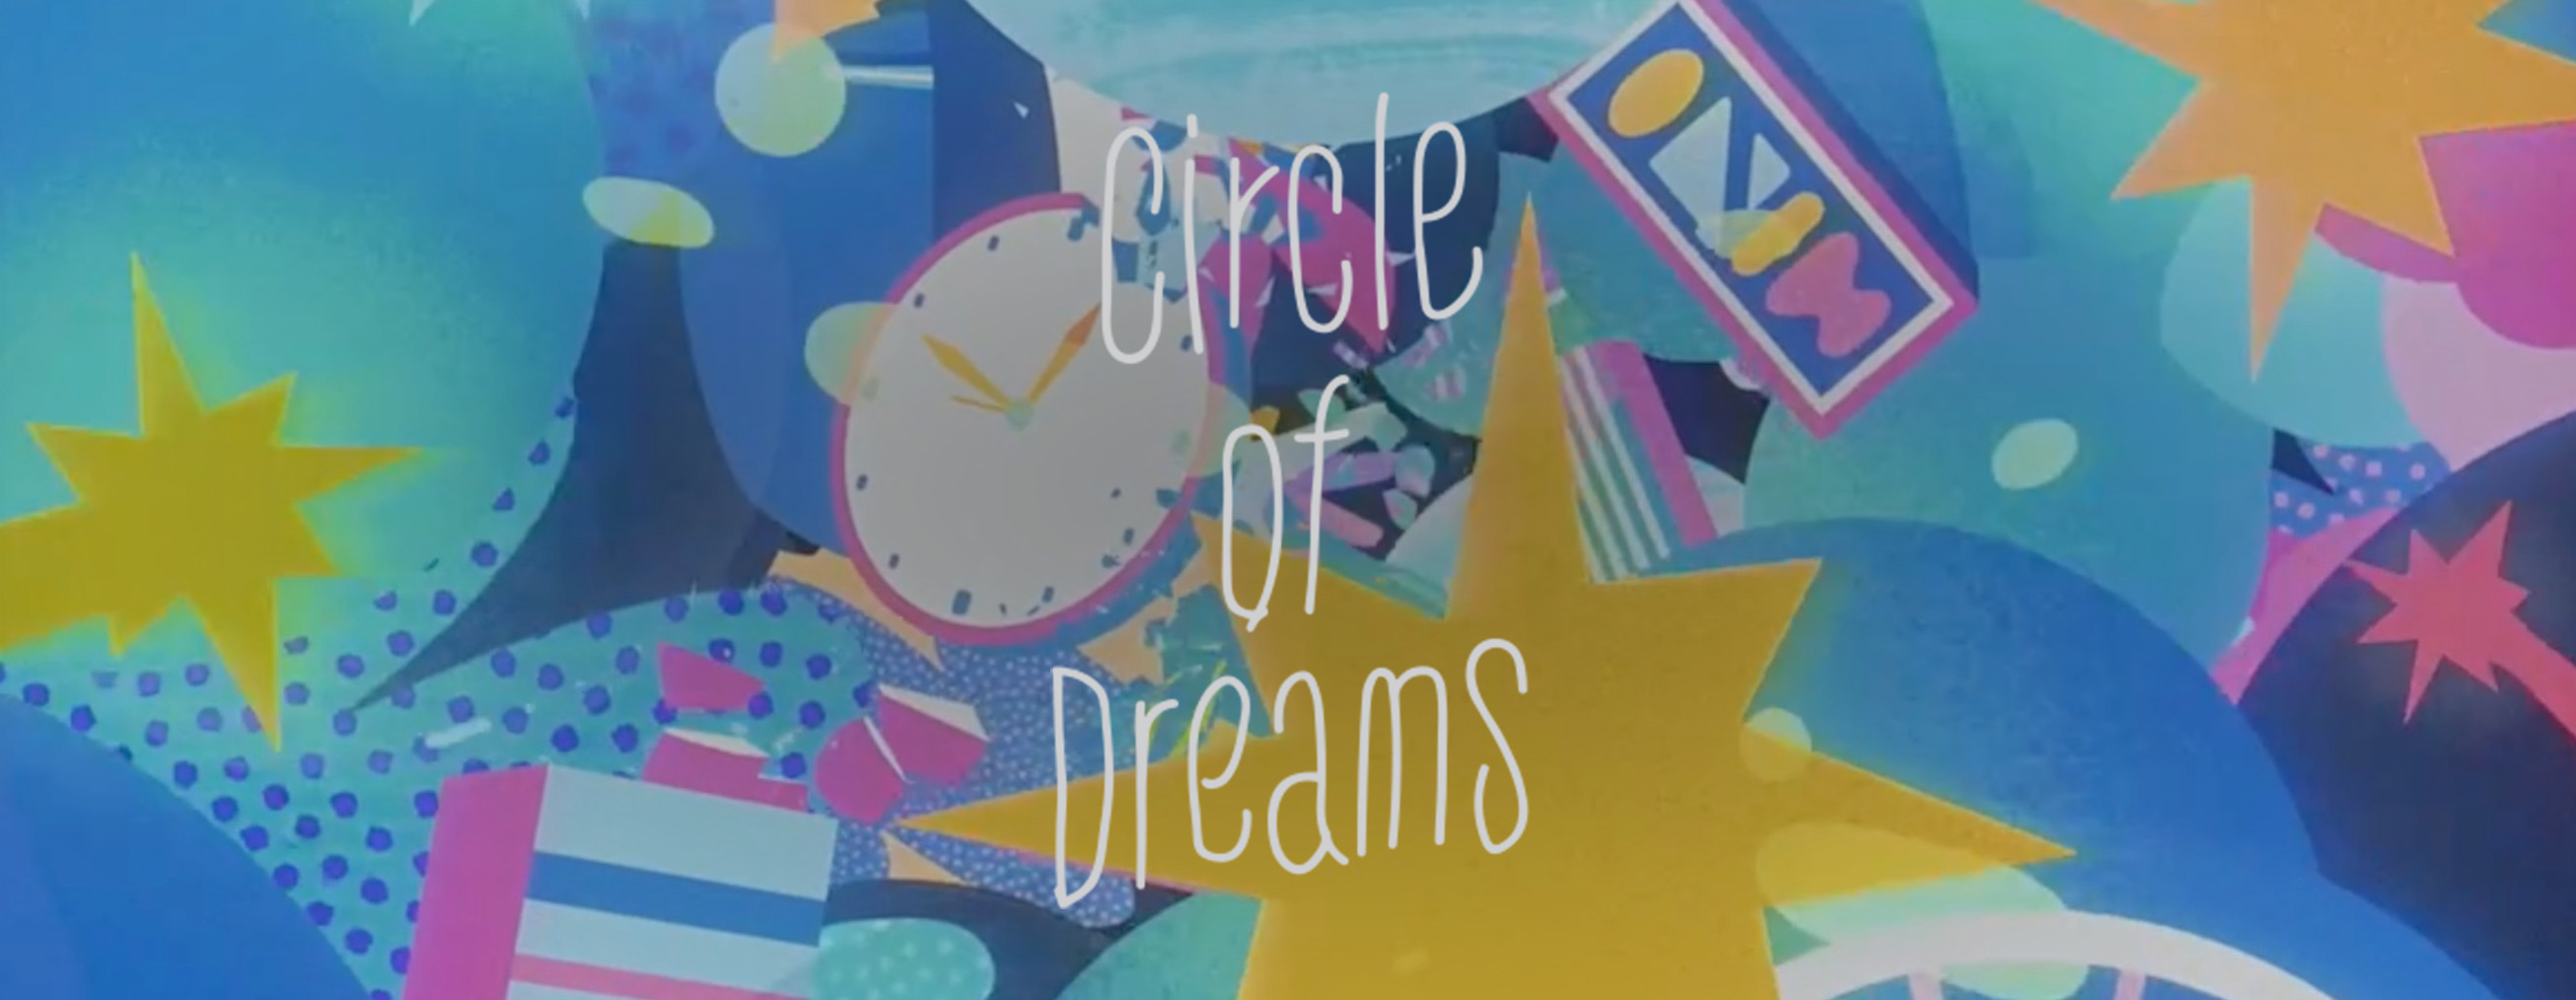 Circle of Dreams